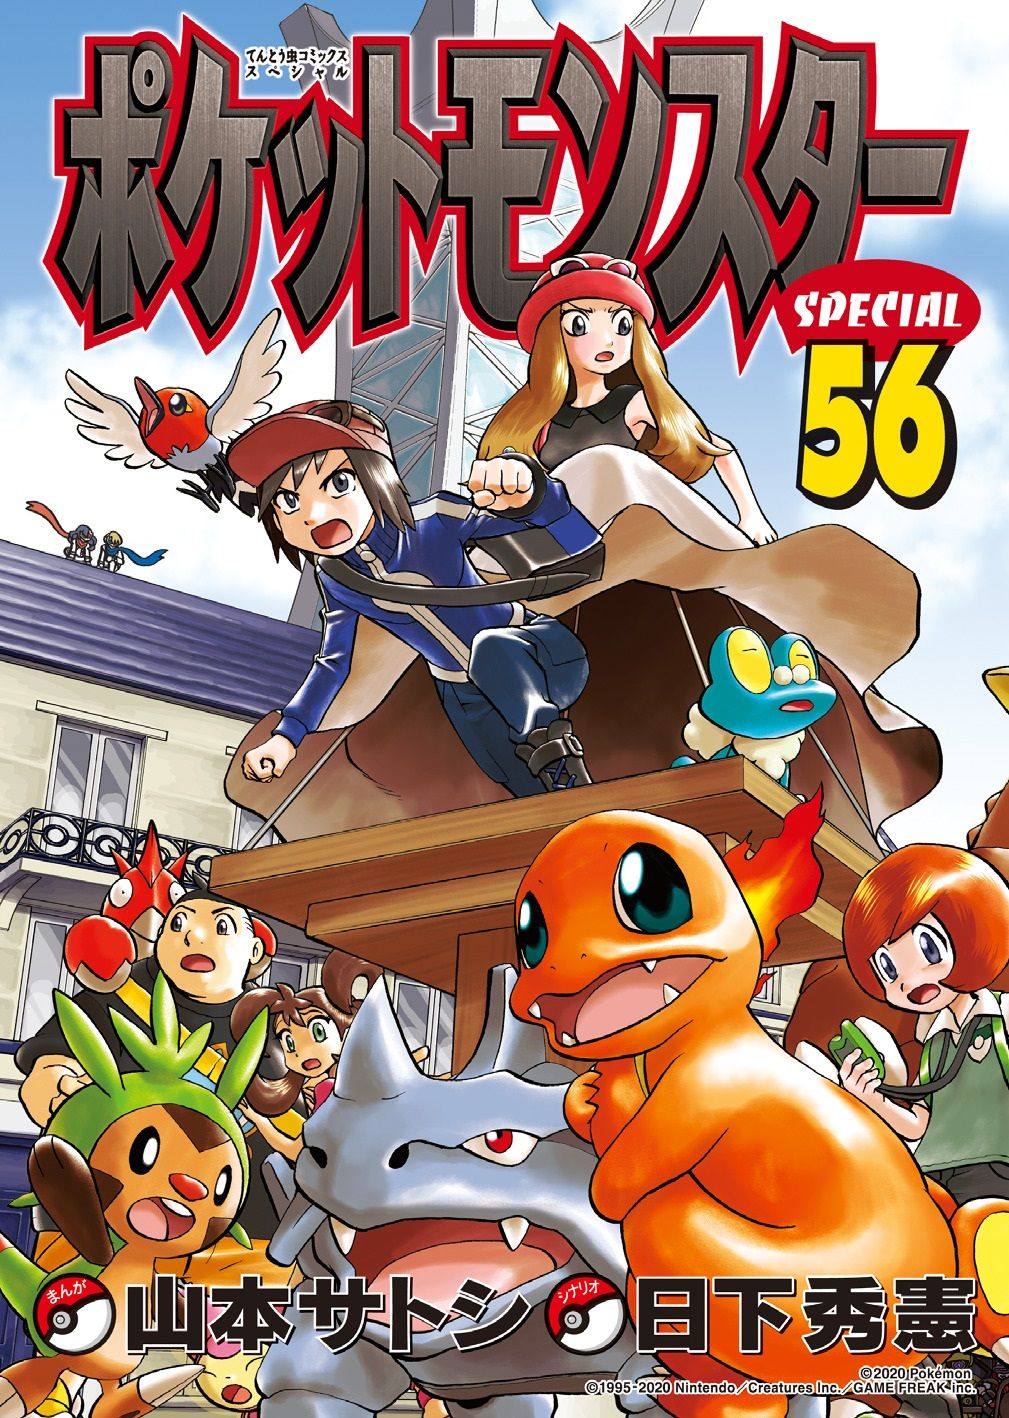 Pokémon Special cover 8